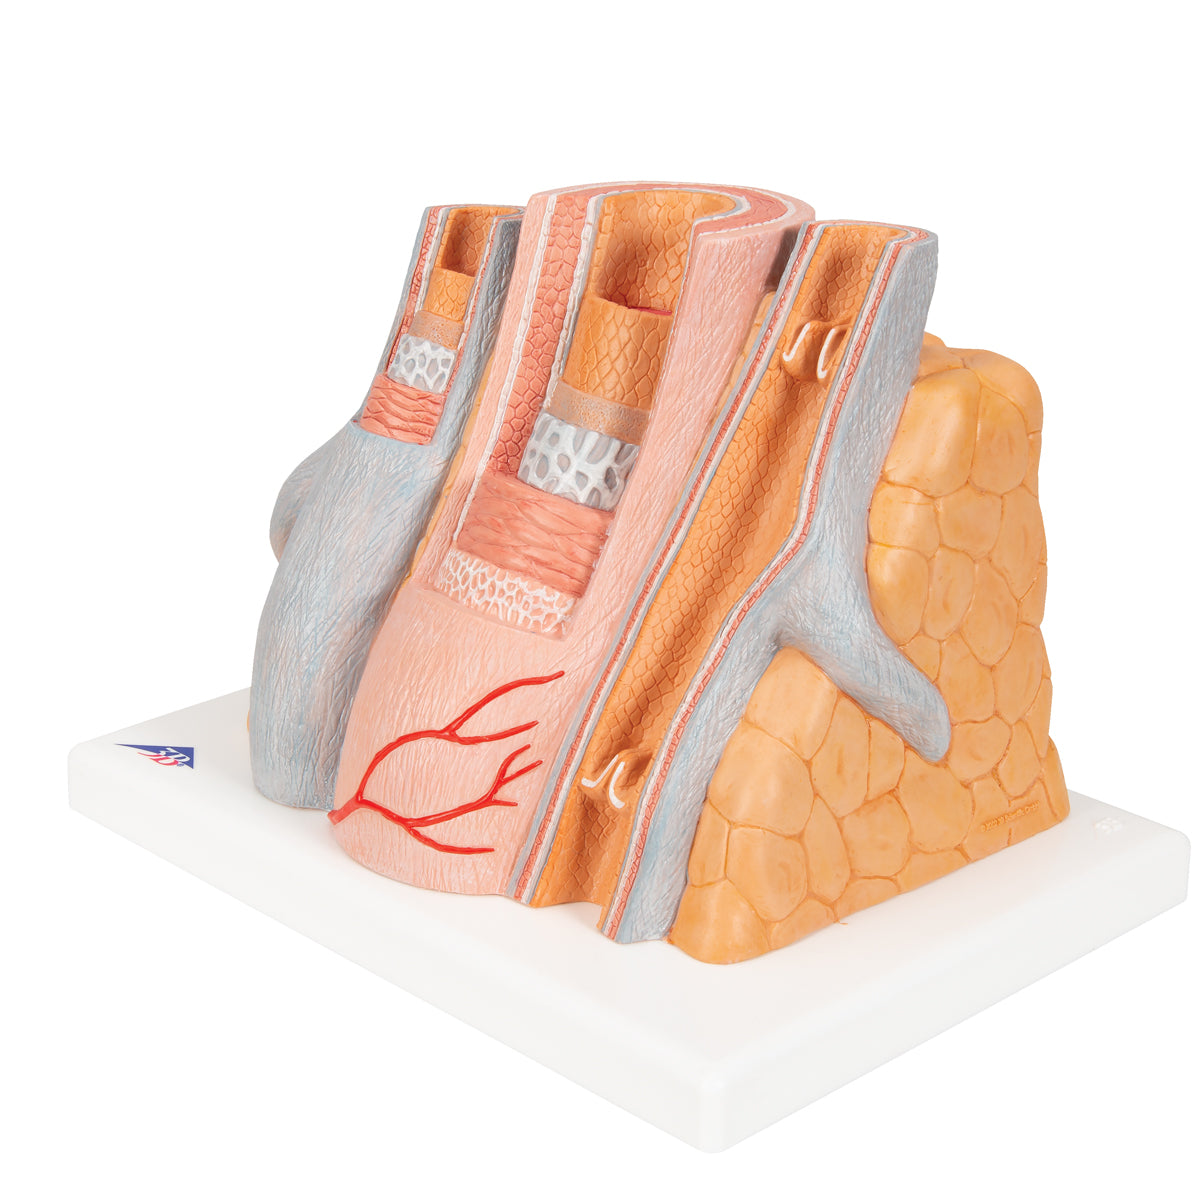 Detaljerad modell av 1 artär och 2 vener som är kraftigt förstorad